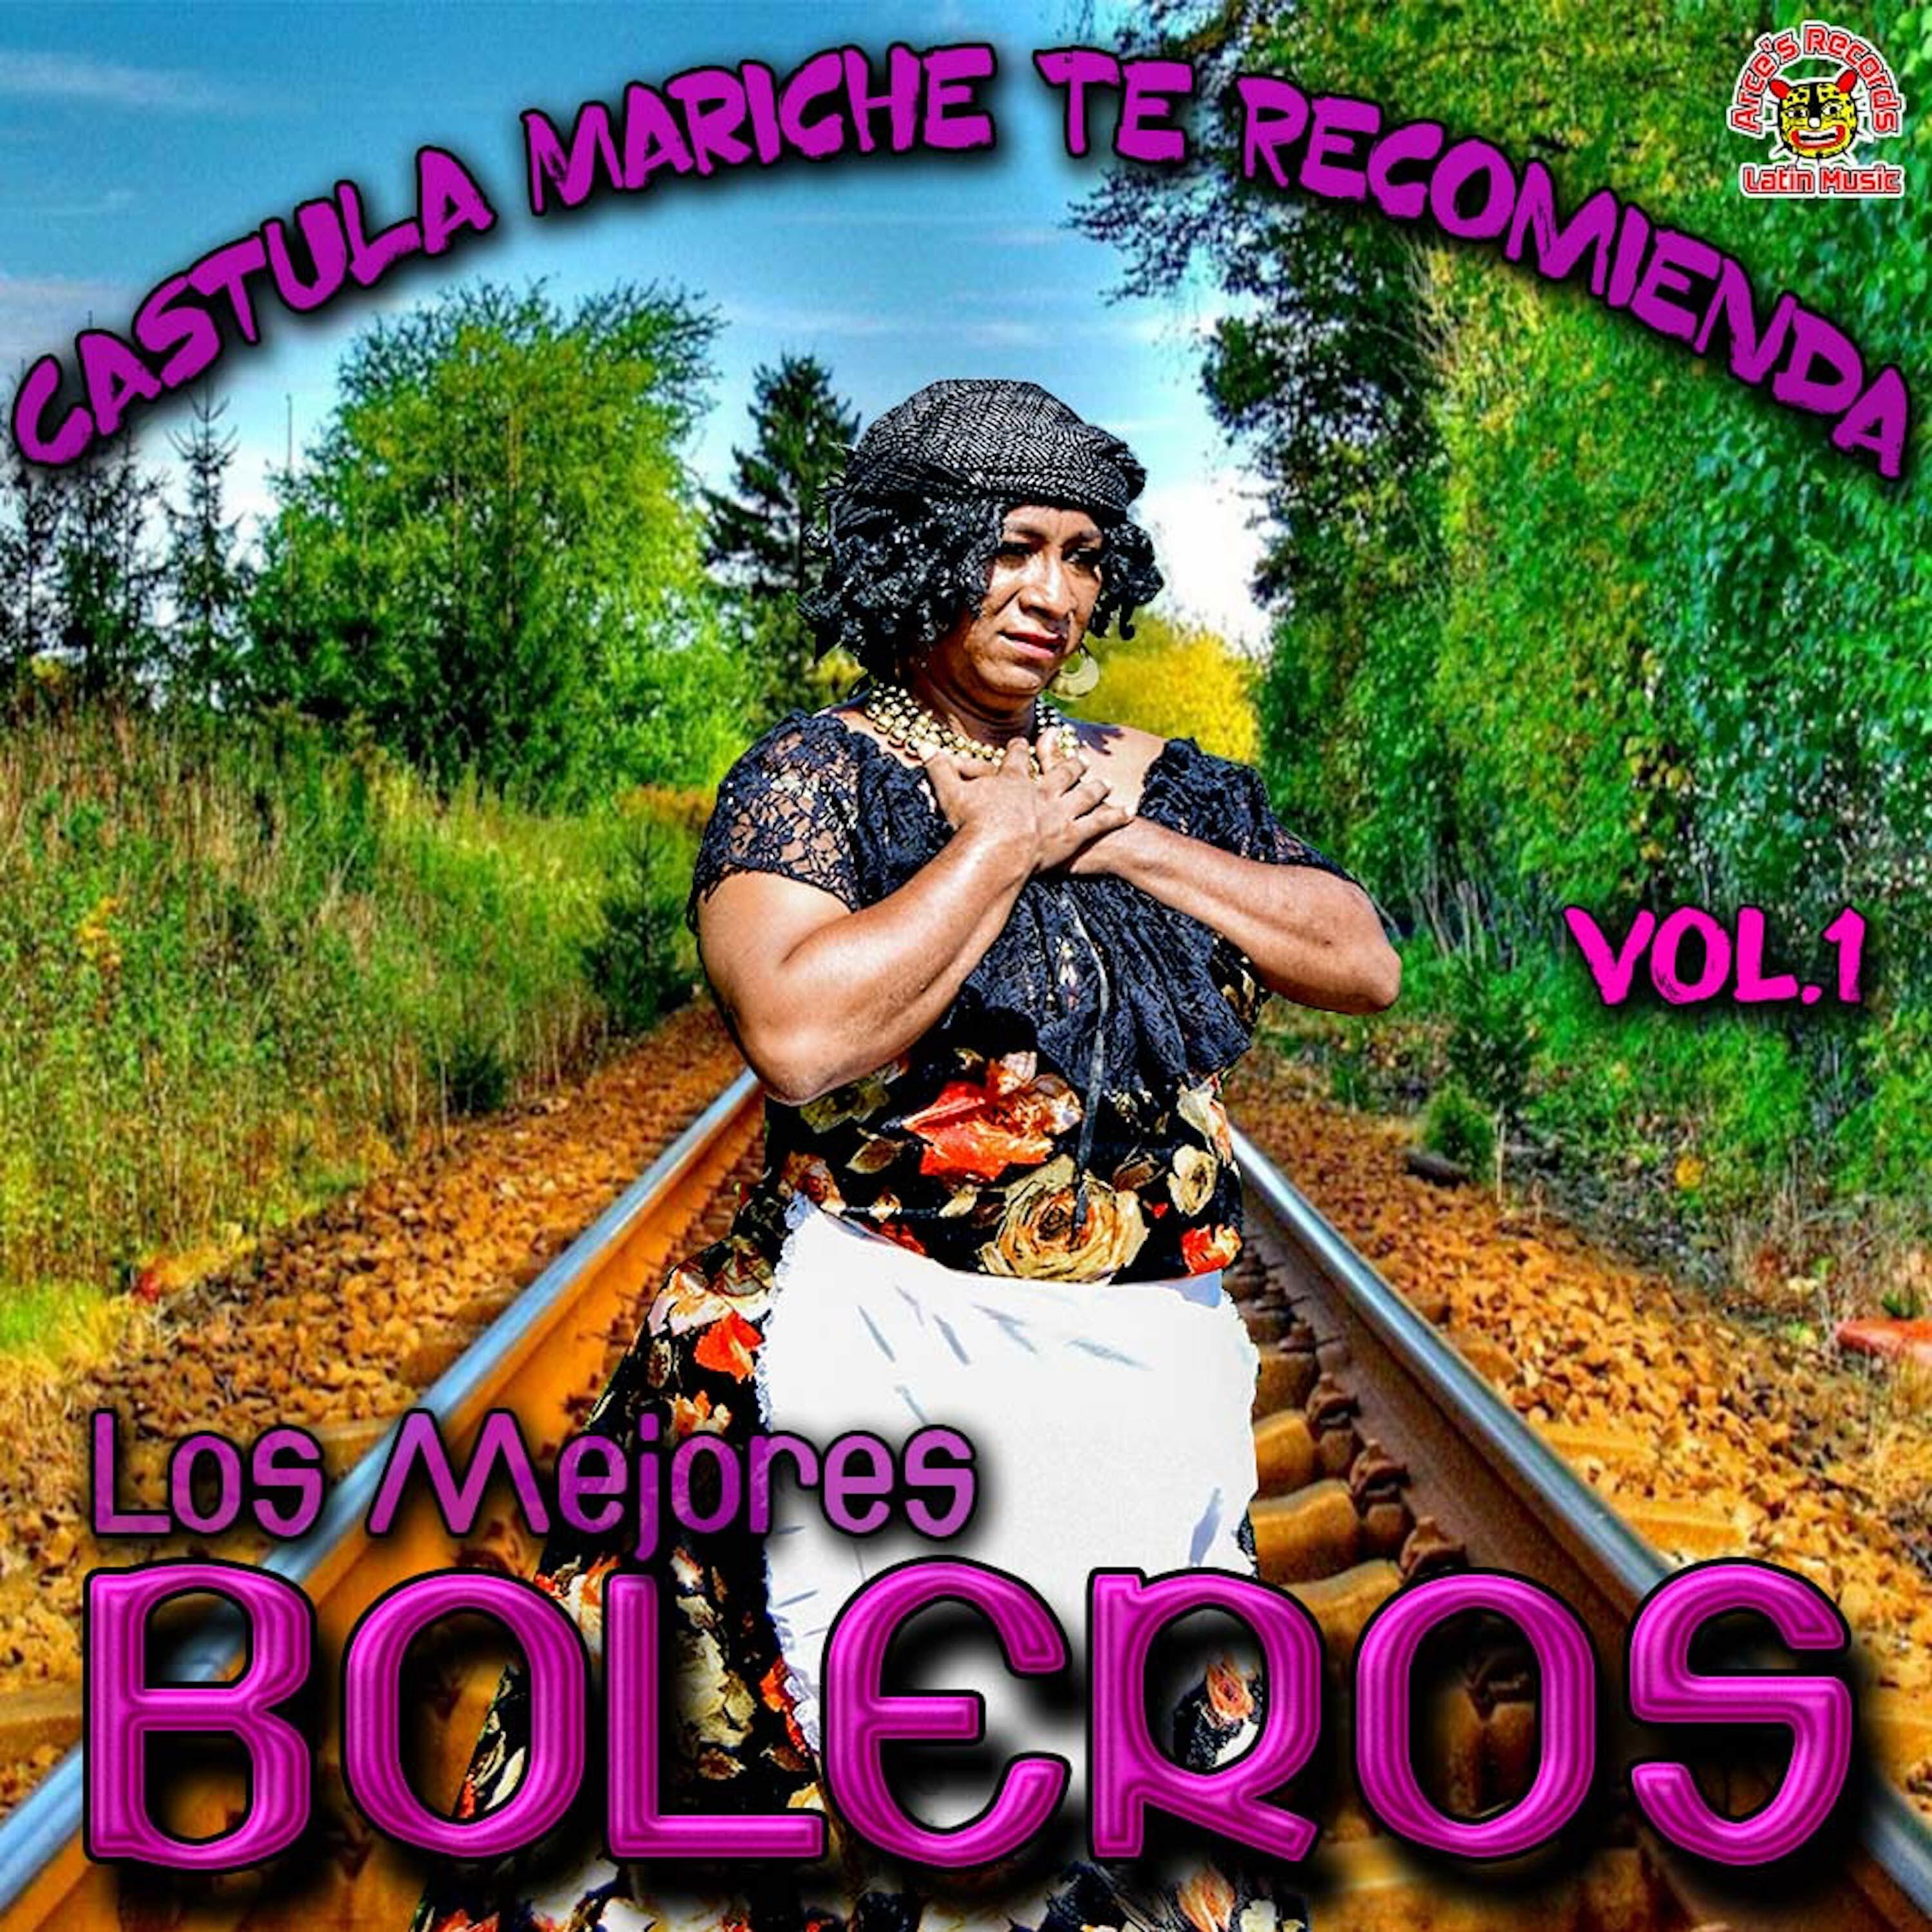 Castula Mariche Te Recomienda "Los Mejores Boleros" Vol. 1